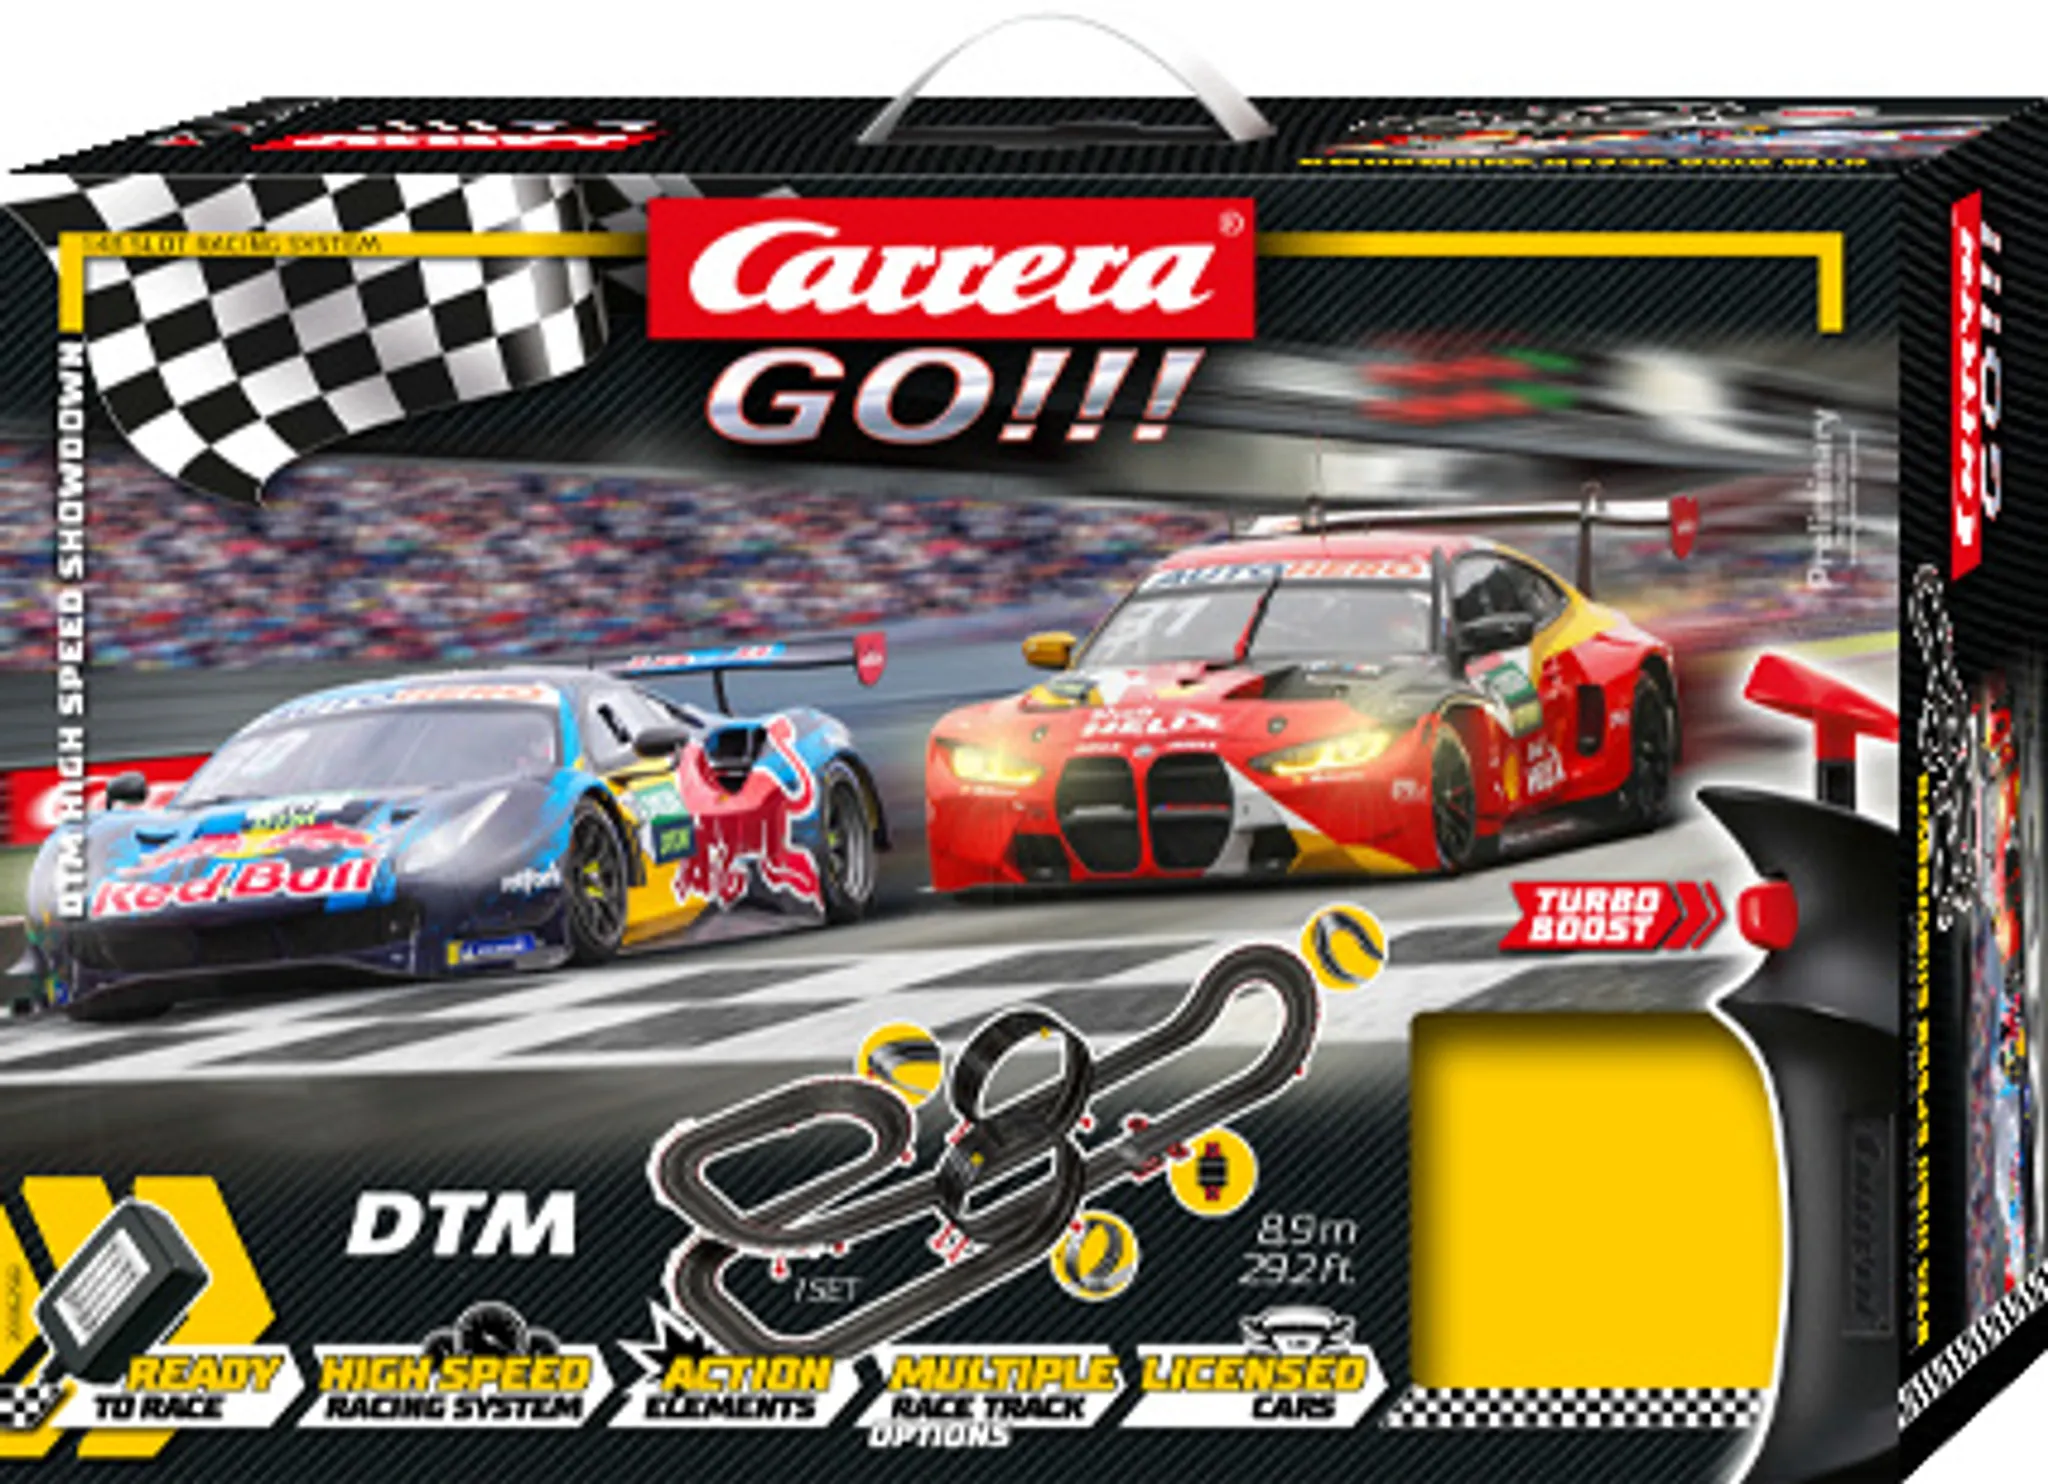 Circuit GT Race OFF slot 1/43 Carrera GO!!! - 20062550